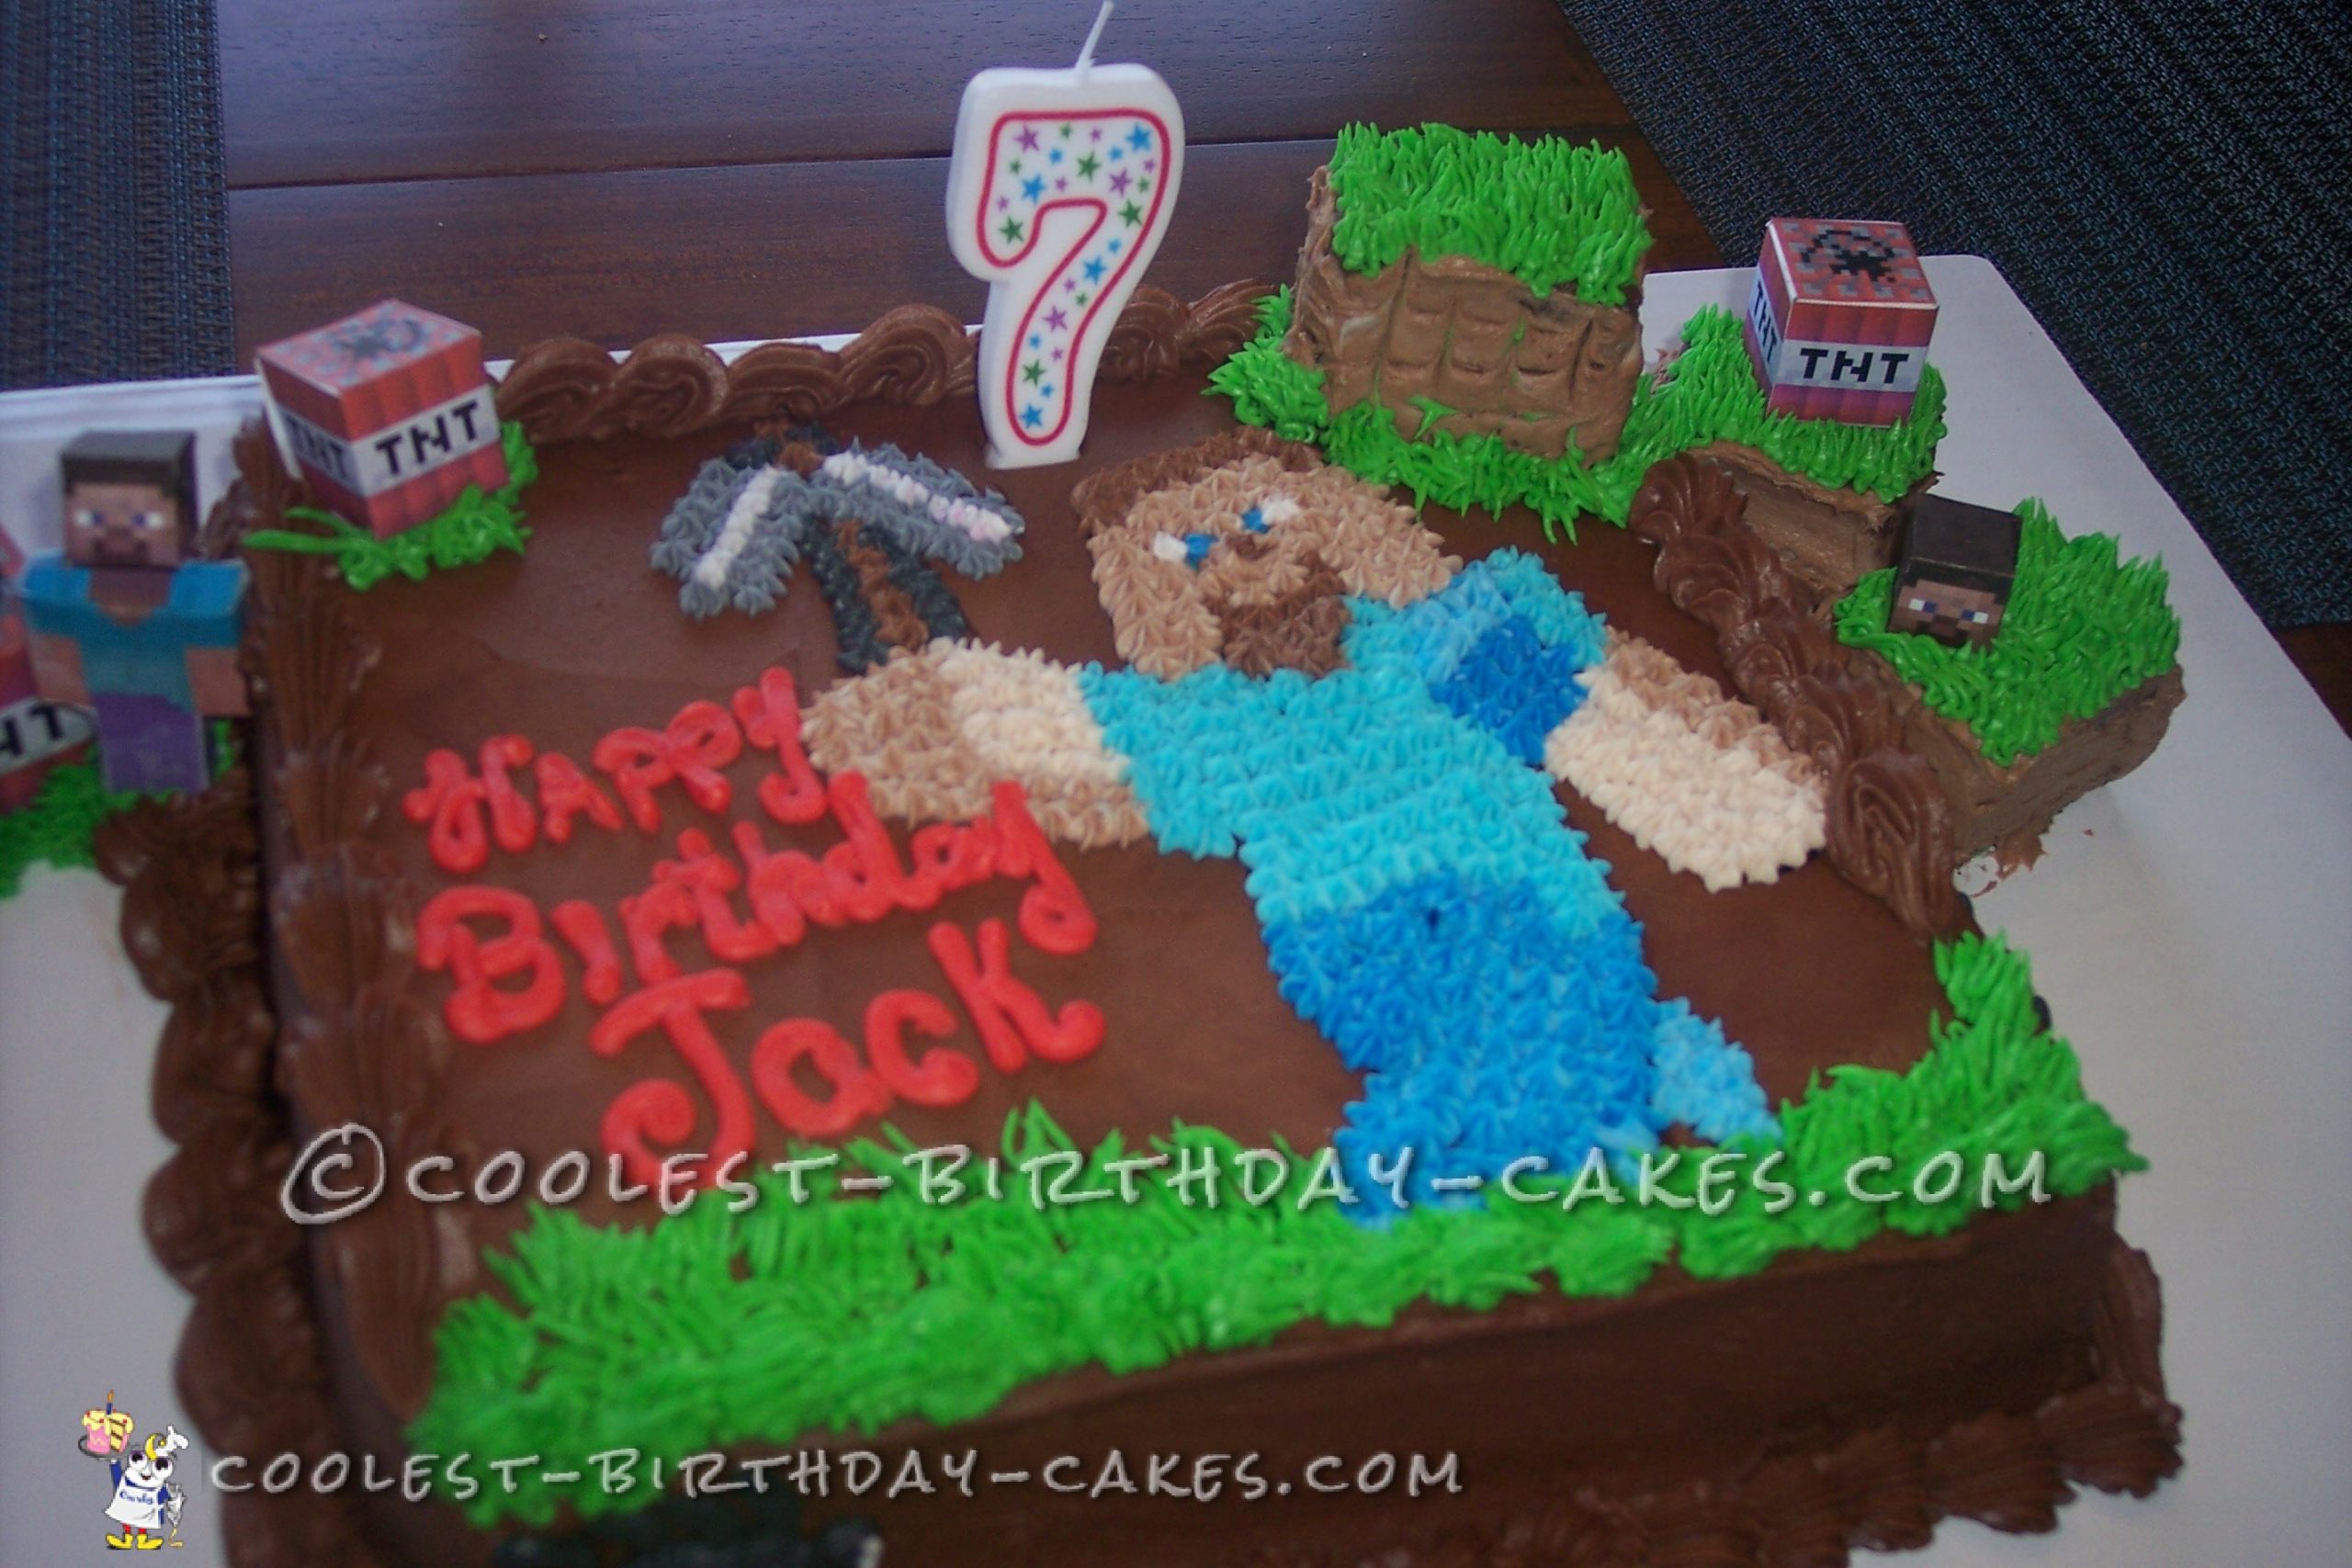 Coolest Minecraft Birthday Cake